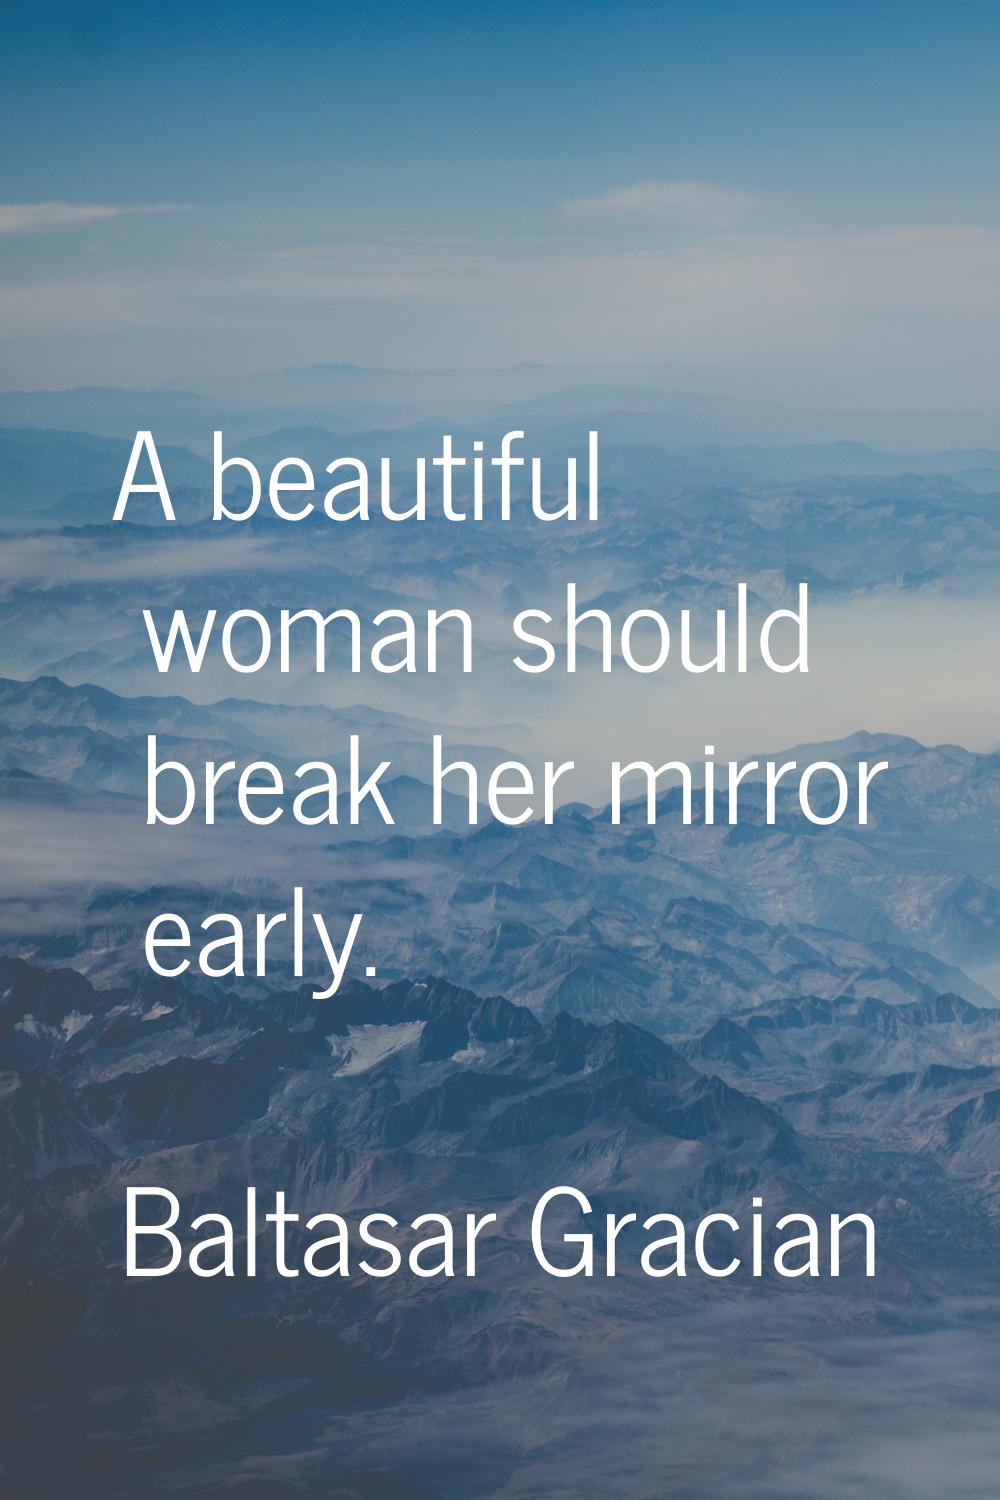 A beautiful woman should break her mirror early.